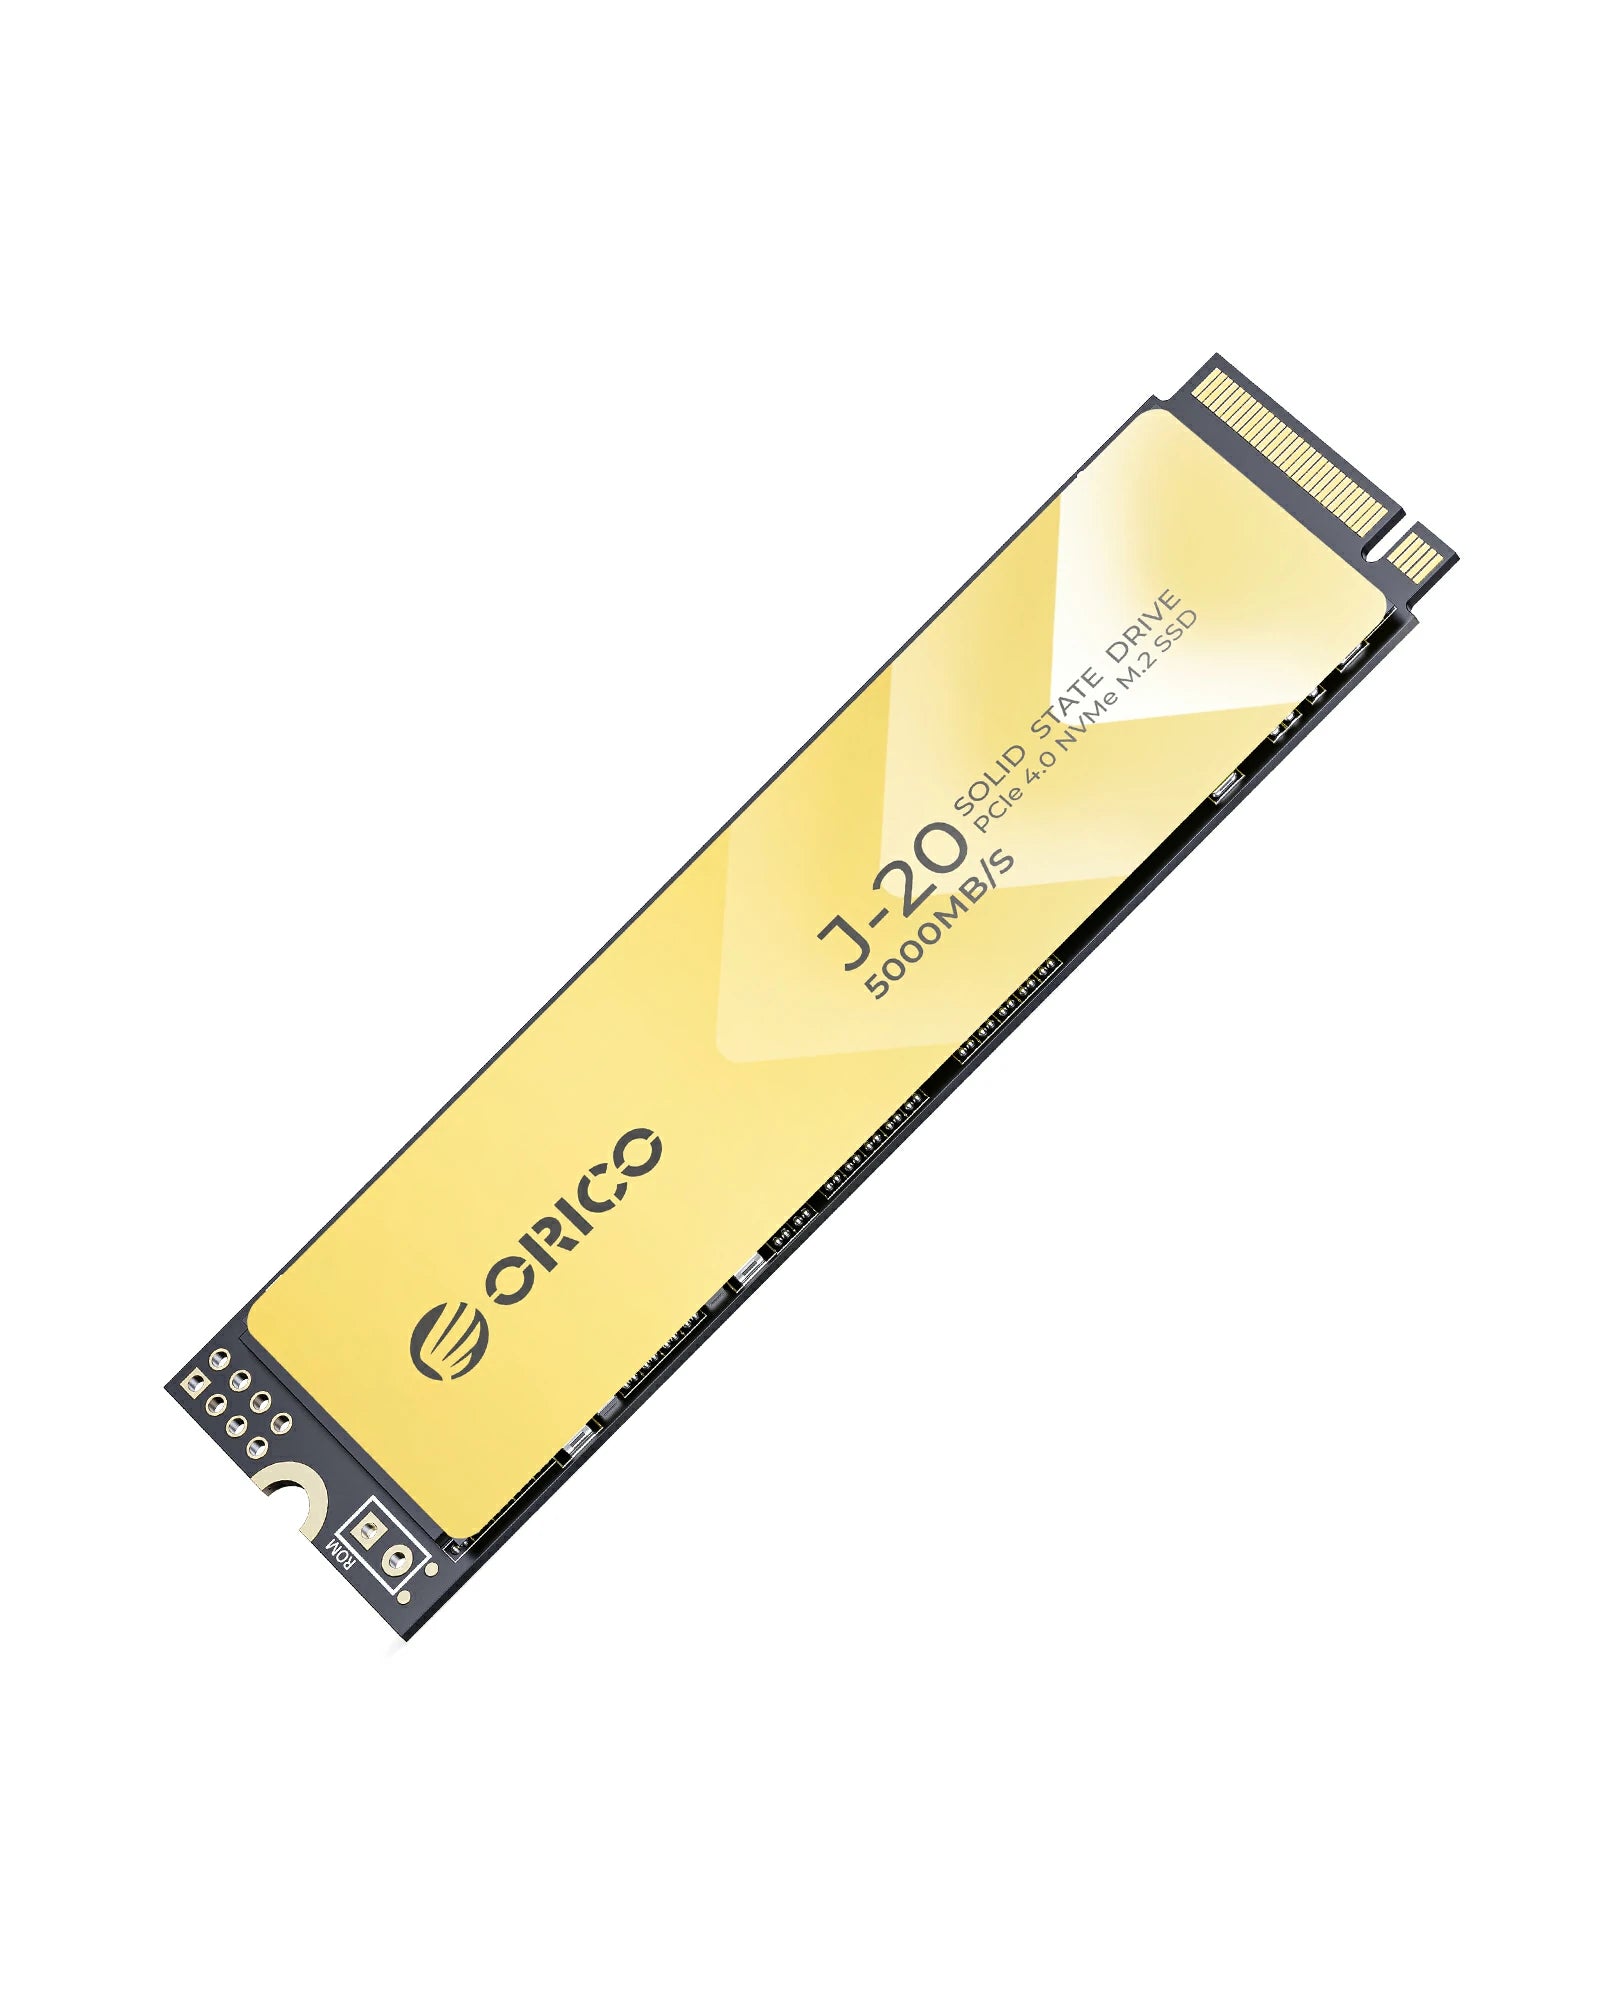 ORICO J-20 PCIe 4.0 NVMe M.2 SSD